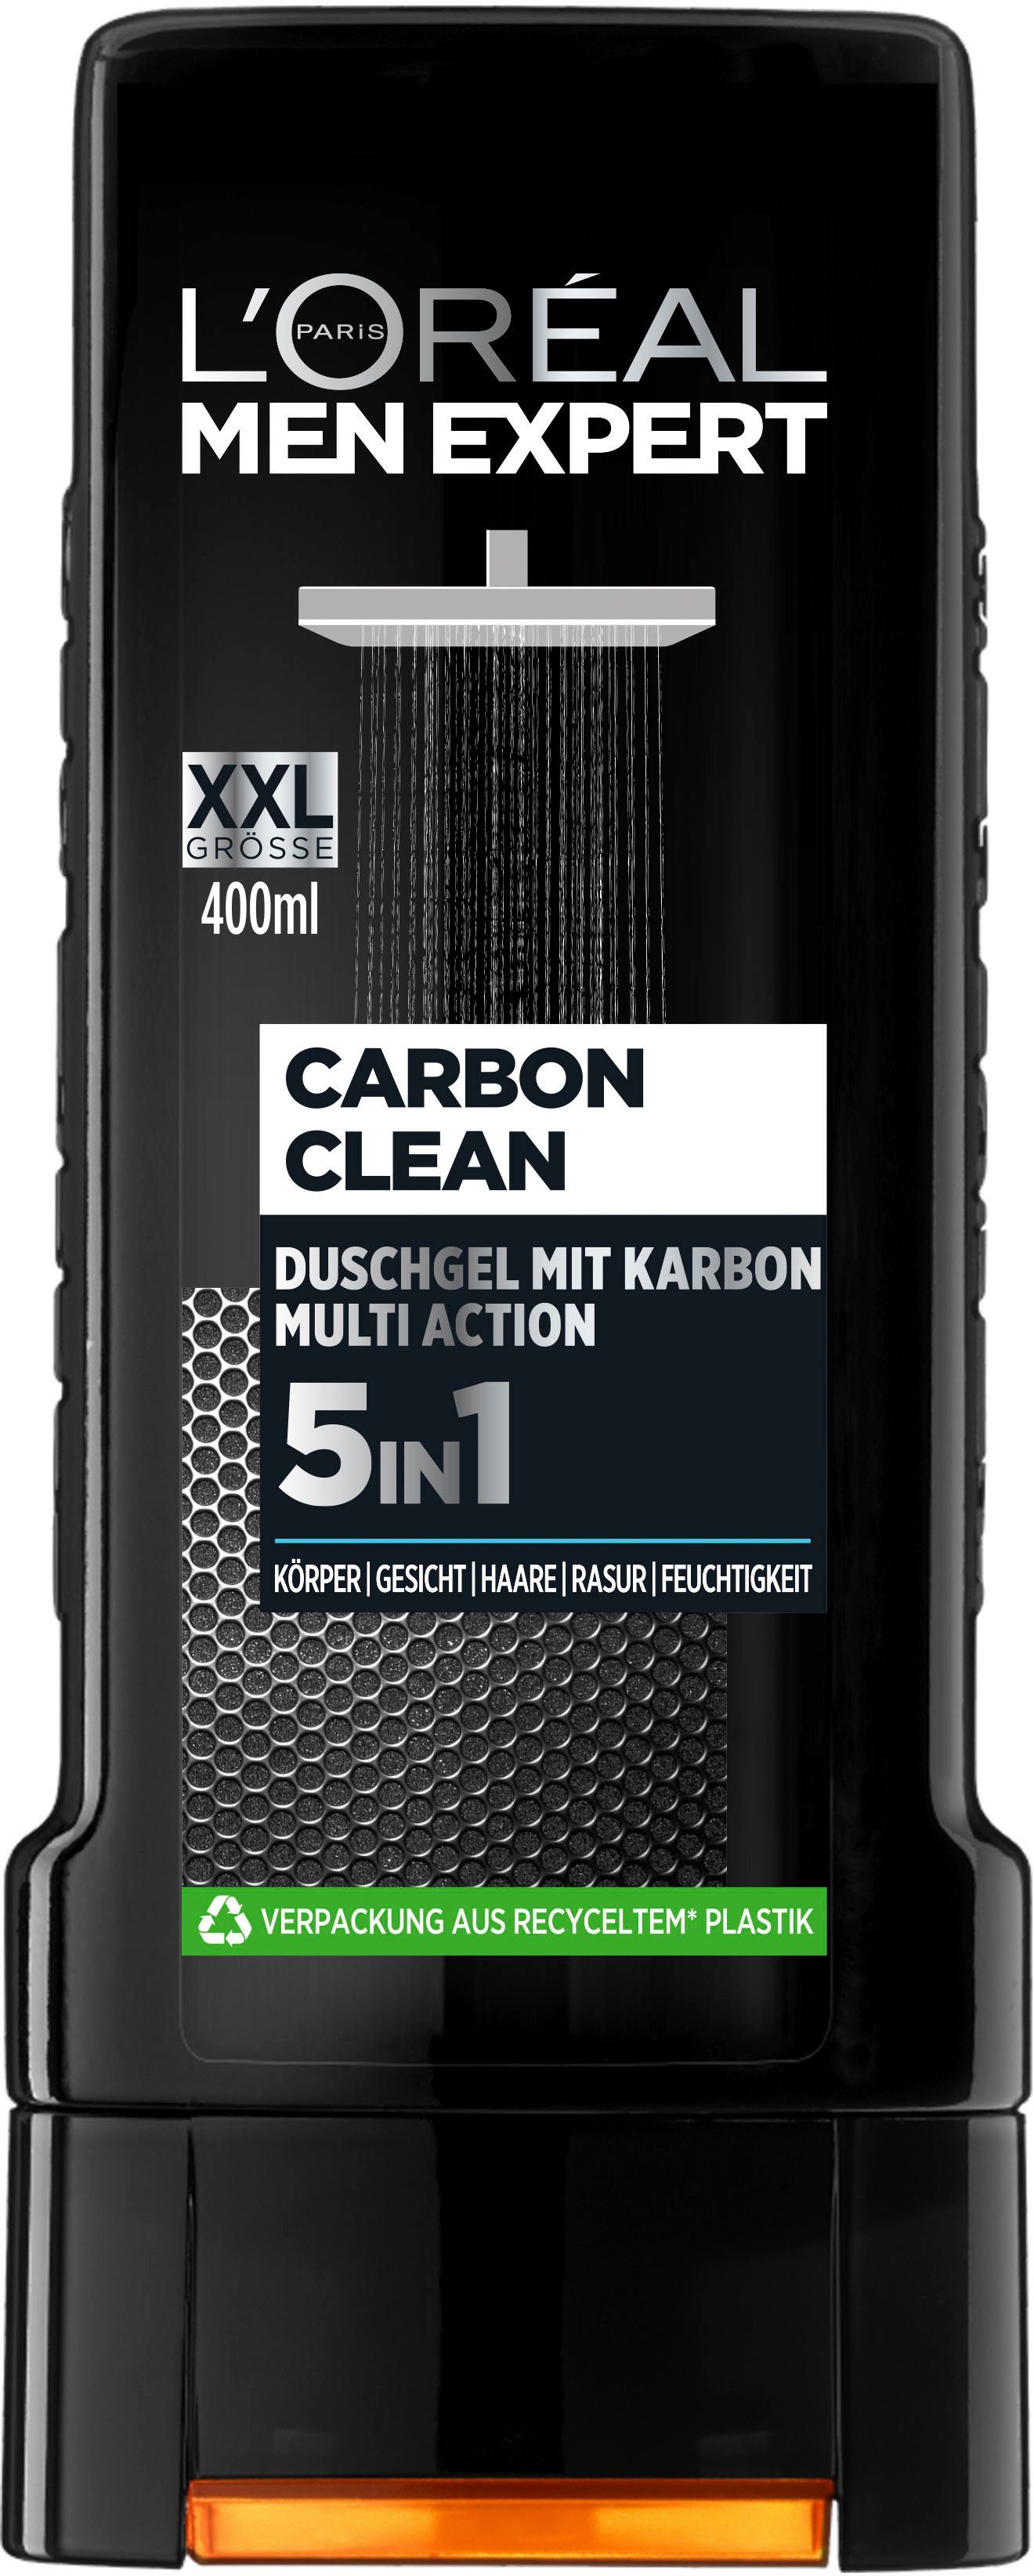 PARIS XXL Carbon Duschgel L'ORÉAL MEN EXPERT 5in1 Clean